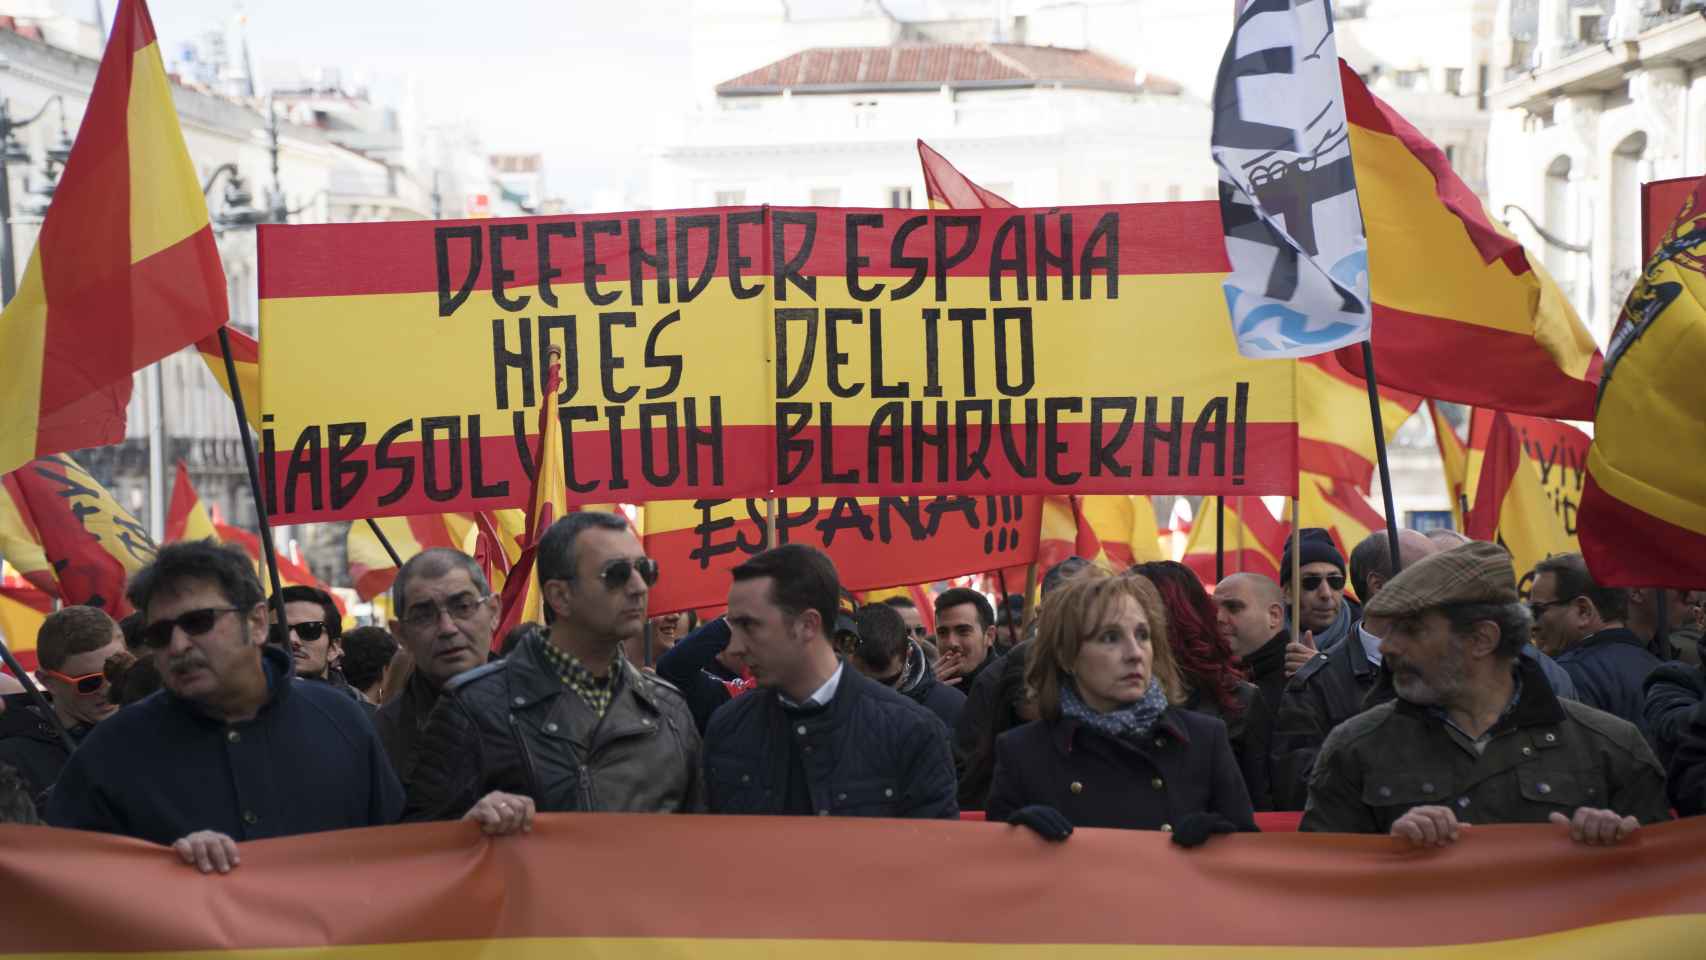 Cabecera de la manifestación que ha pedido la absolución de los condenados de Blanquerna